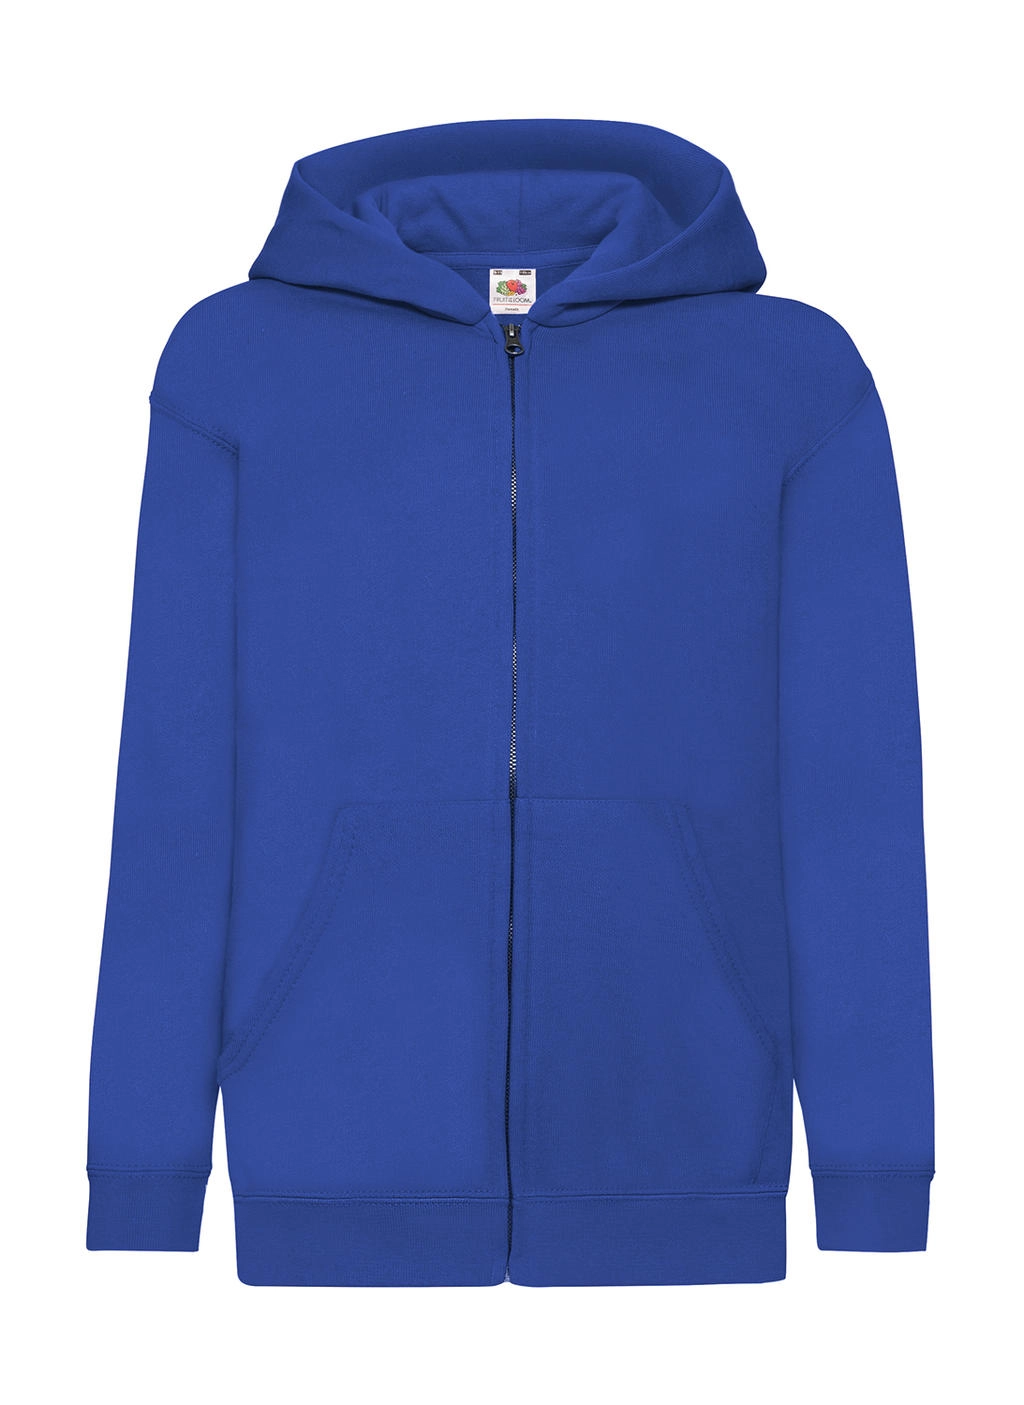 Kids` Classic Hooded Sweat Jacket zum Besticken und Bedrucken in der Farbe Royal Blue mit Ihren Logo, Schriftzug oder Motiv.